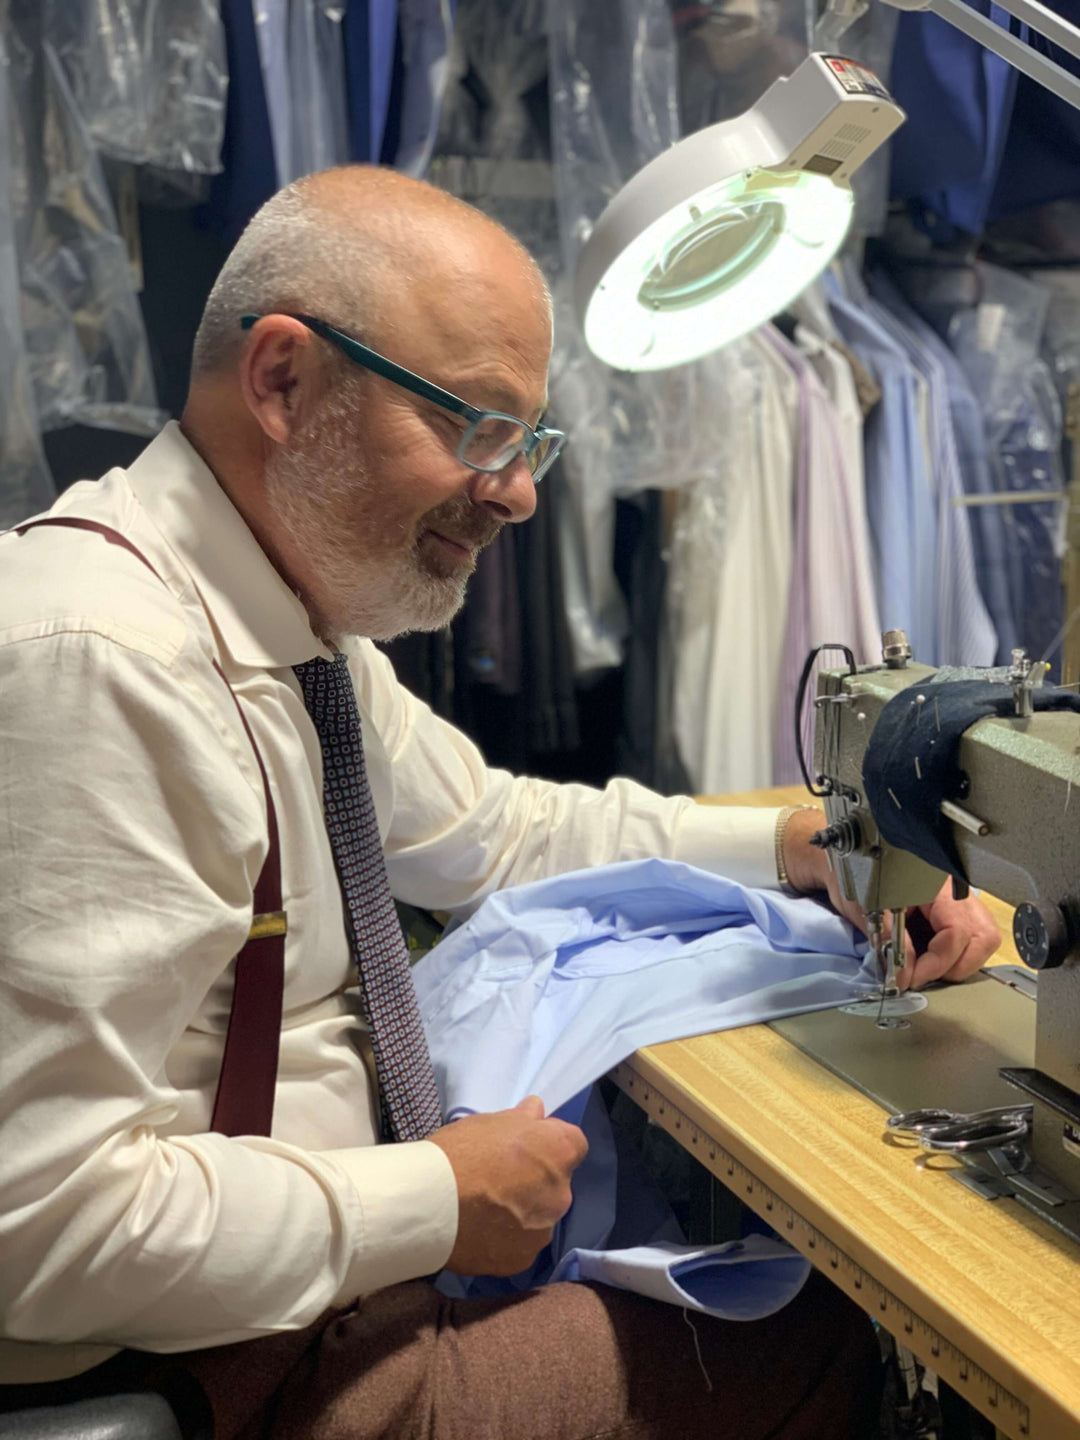 Anatoly sewing